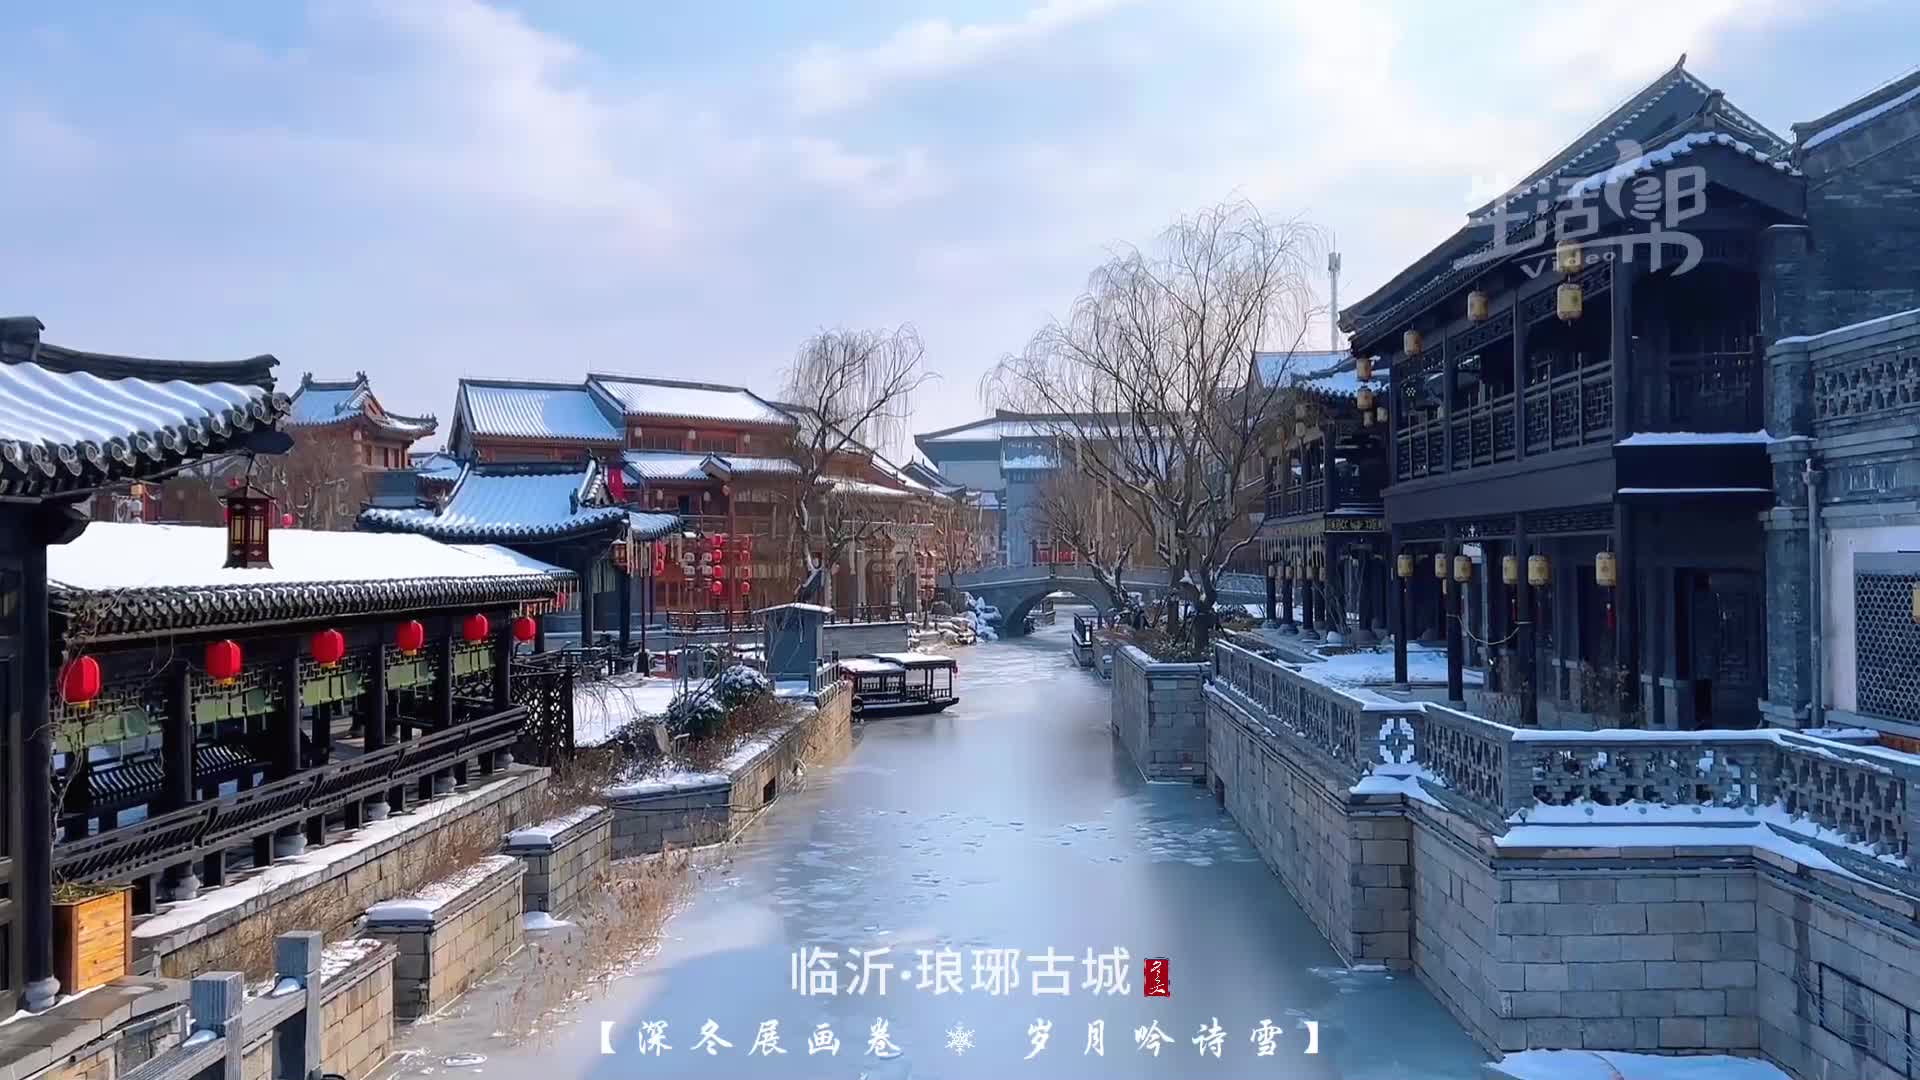 临沂春节后的第一场雪带你看一幅淡雅的山水画临沂一落雪梦回琅琊城